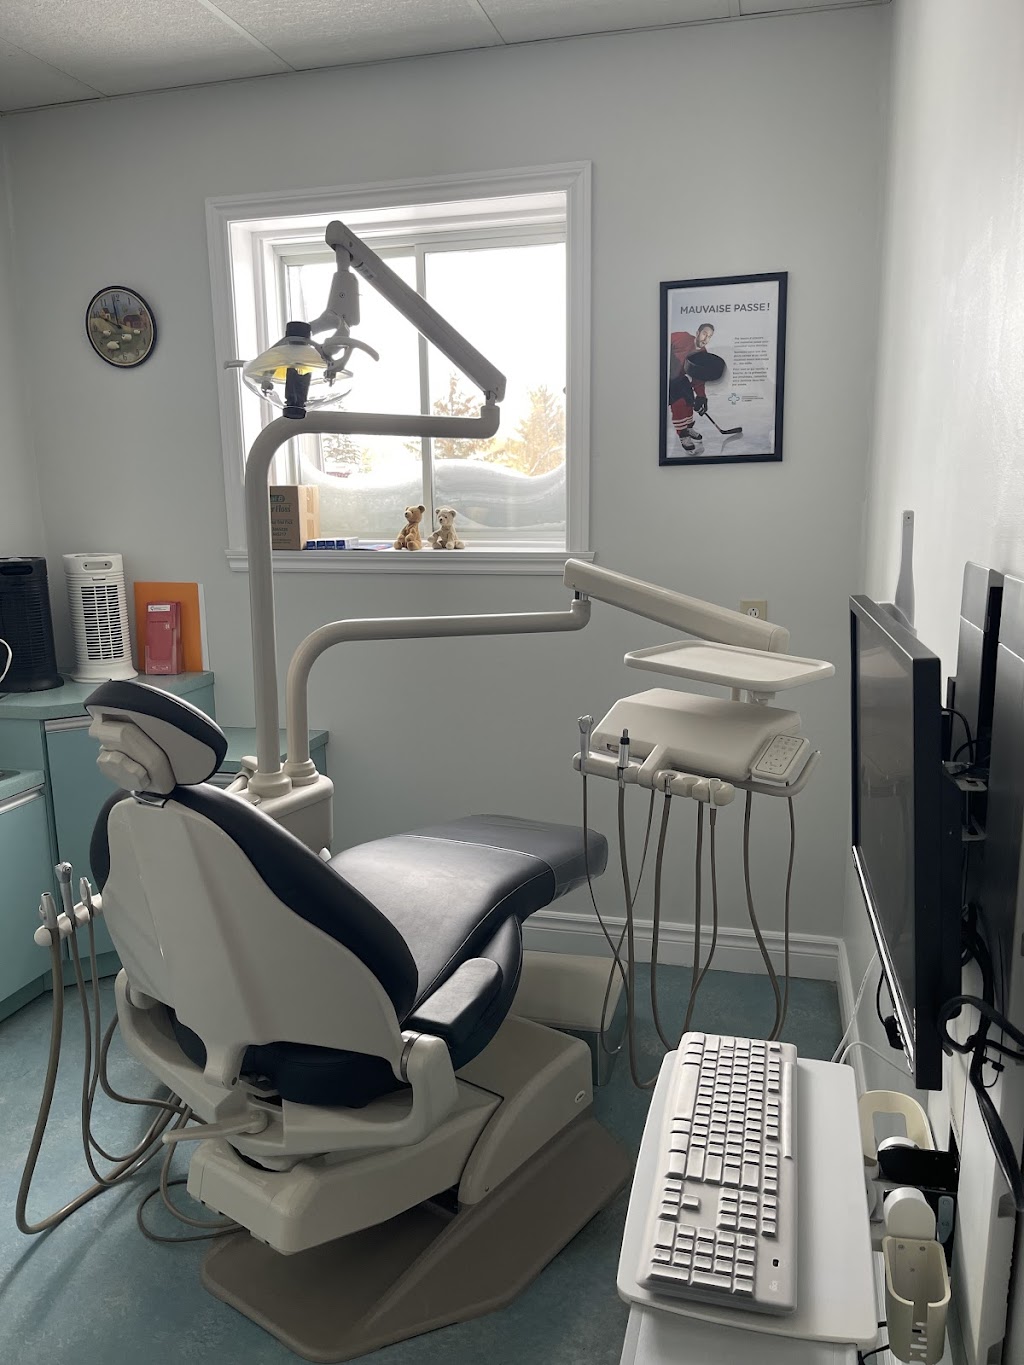 Dentistes Ste-Anne (Centre Dentaire Miron) | dentist | 183B Boulevard Ste Anne, Sainte-Anne-des-Plaines, QC J0N 1H0, Canada | 4504780089 OR +1 450-478-0089